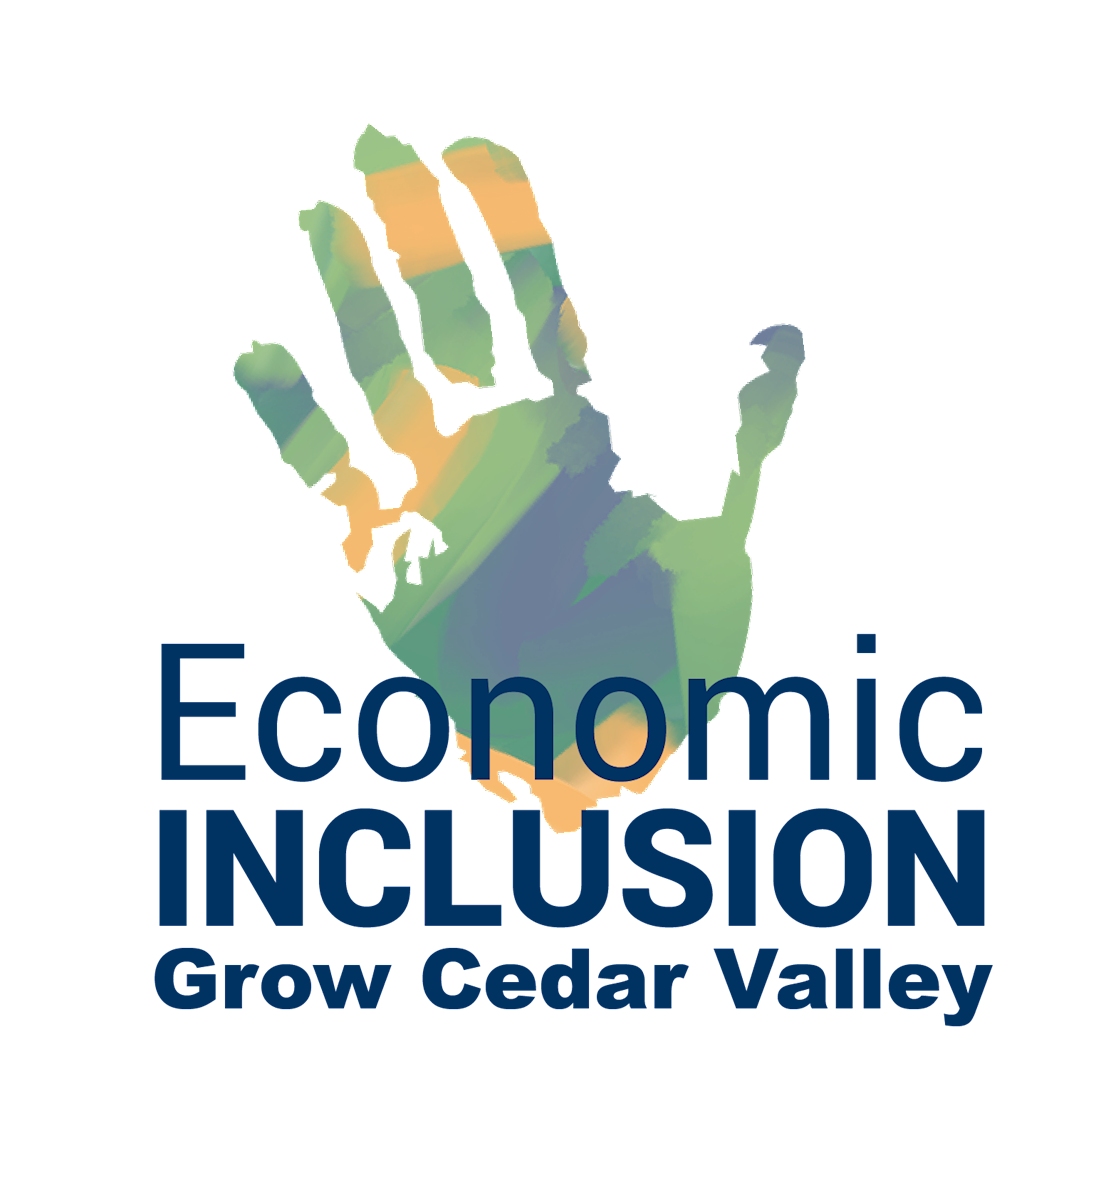 Grow Cedar Valley Economic Inclusion